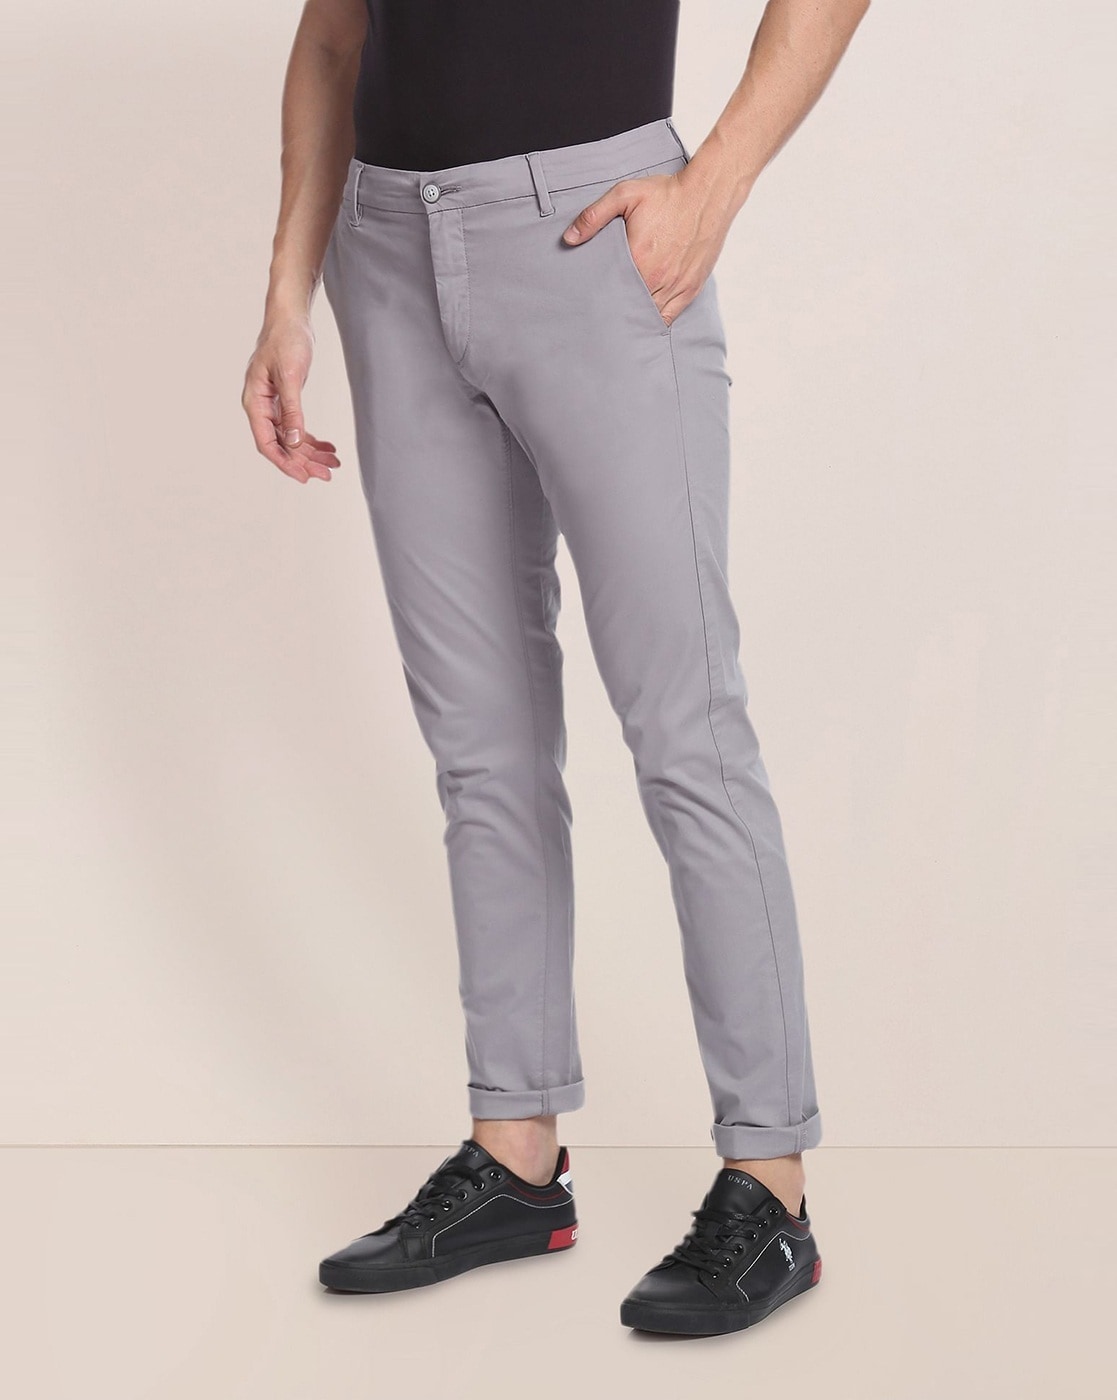 Buy Van Heusen Grey Trousers Online  753033  Van Heusen